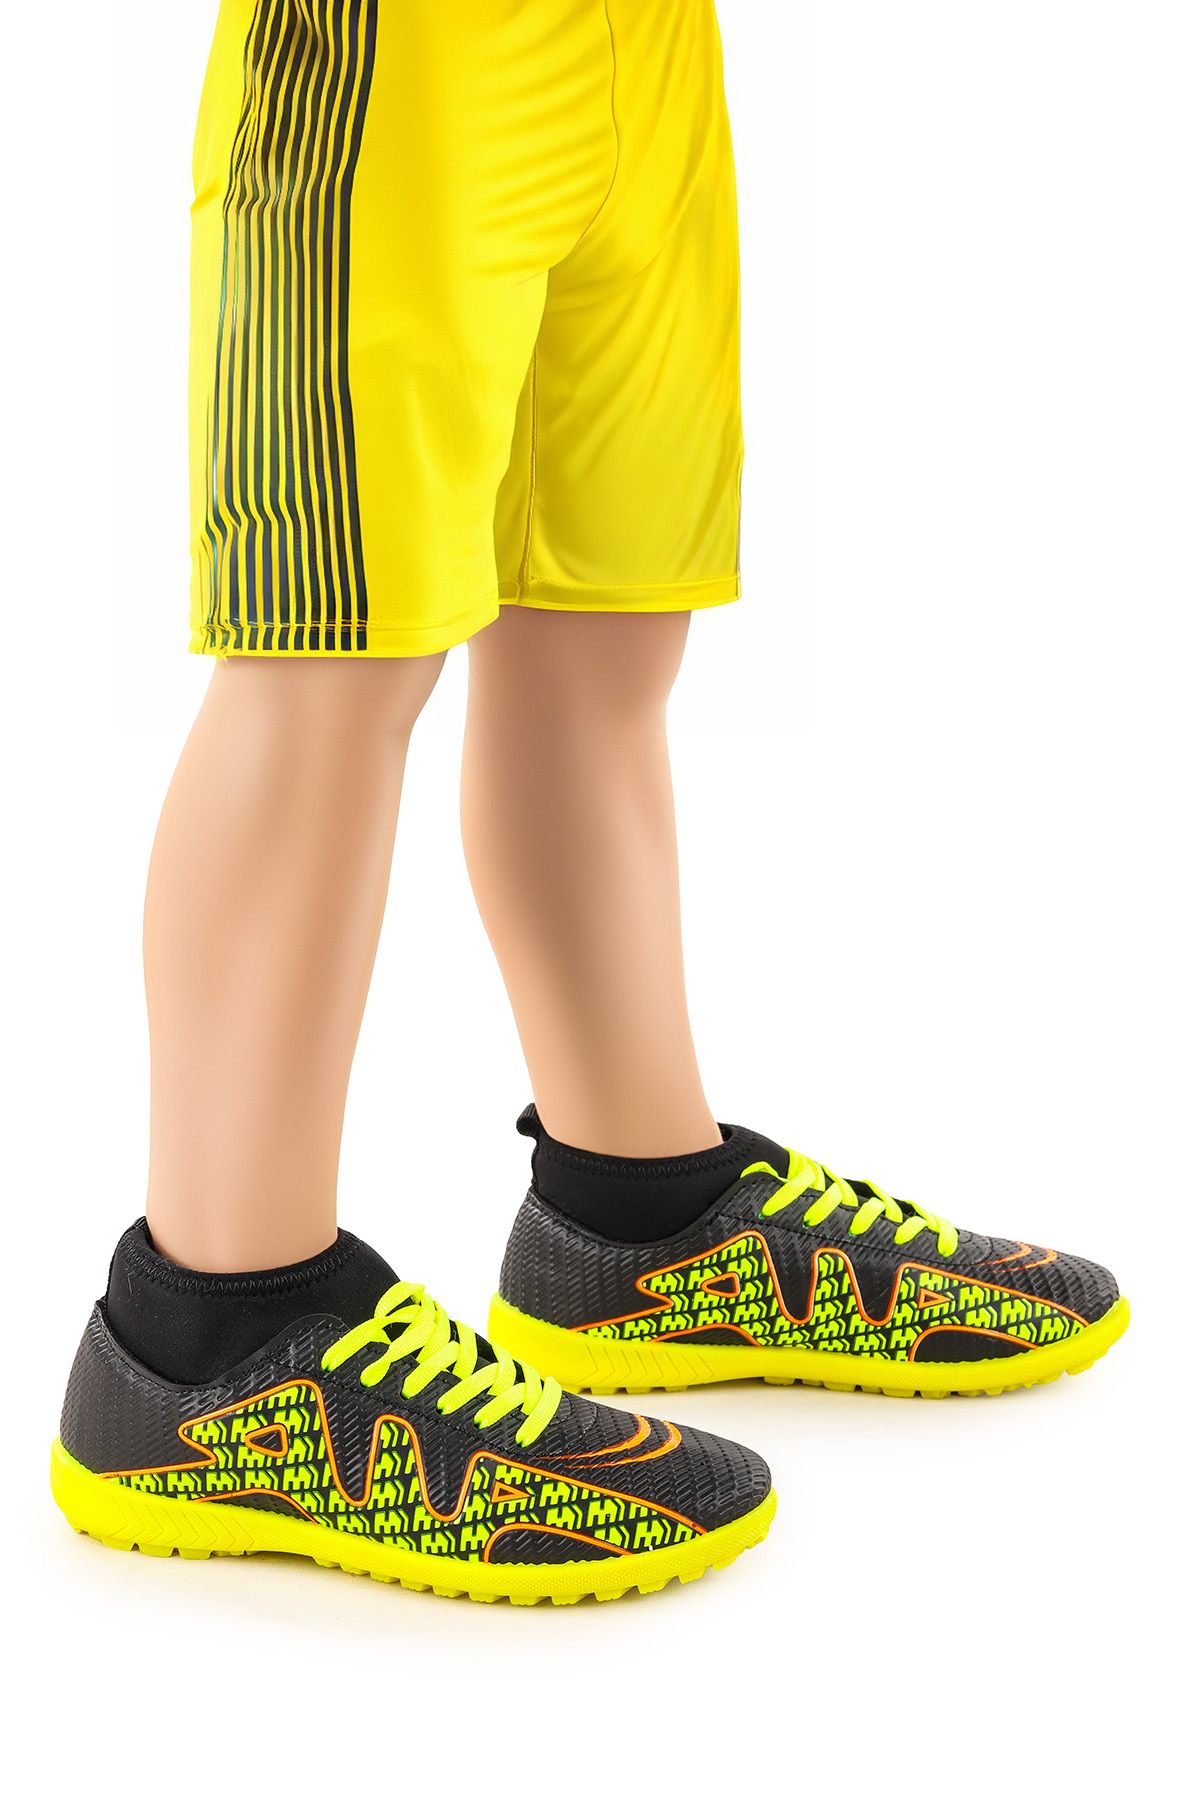 Kiko Kids Persep Boğazlı Halı Saha Erkek Çocuk Futbol Ayakkabı